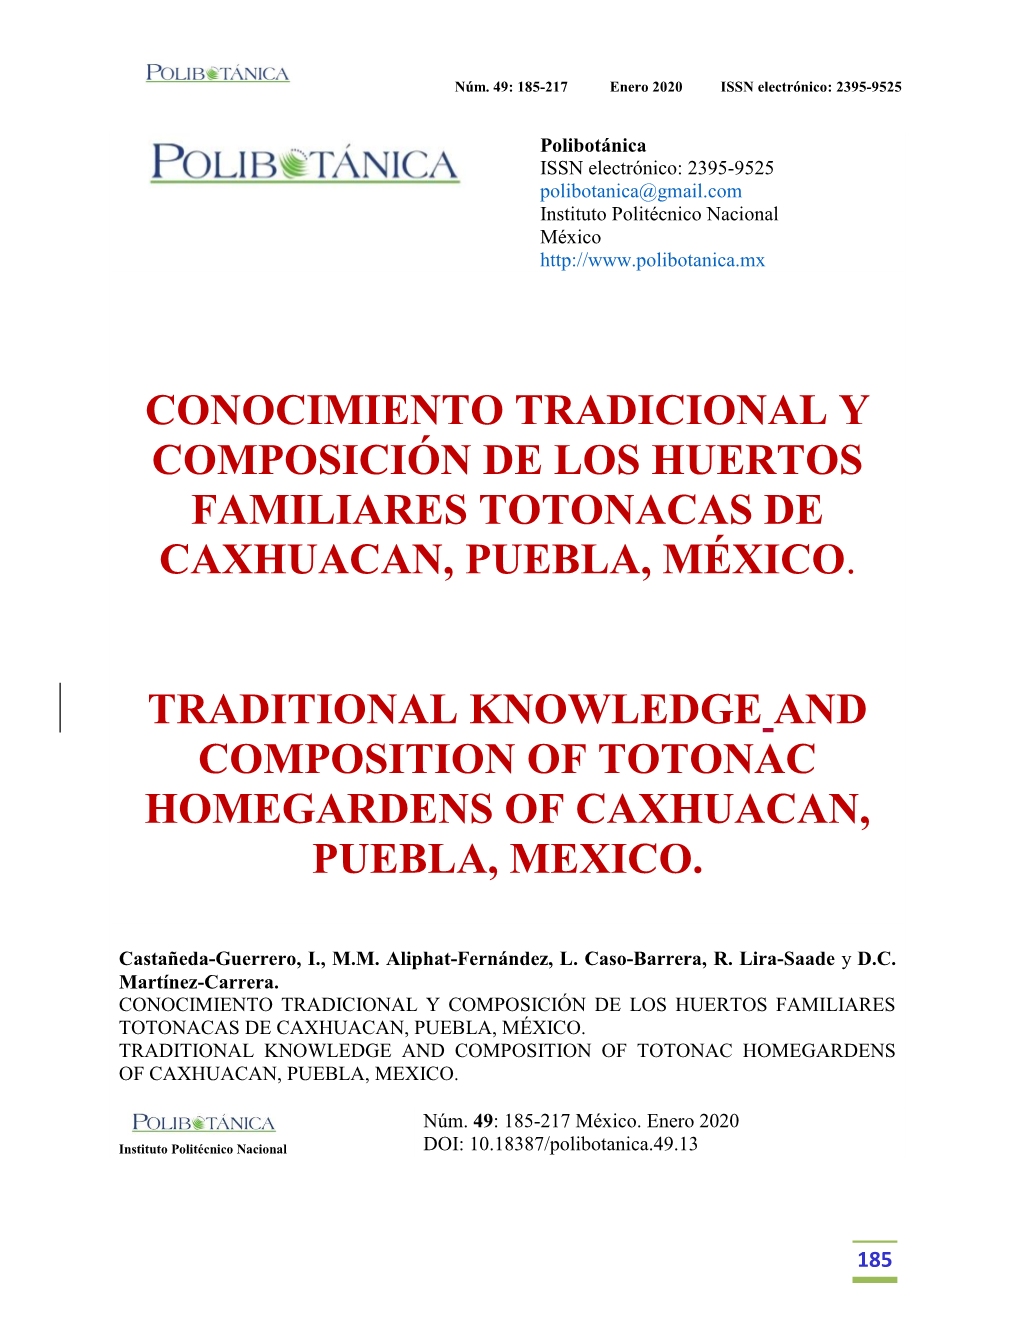 Conocimiento Tradicional Y Composición De Los Huertos Familiares Totonacas De Caxhuacan, Puebla, México